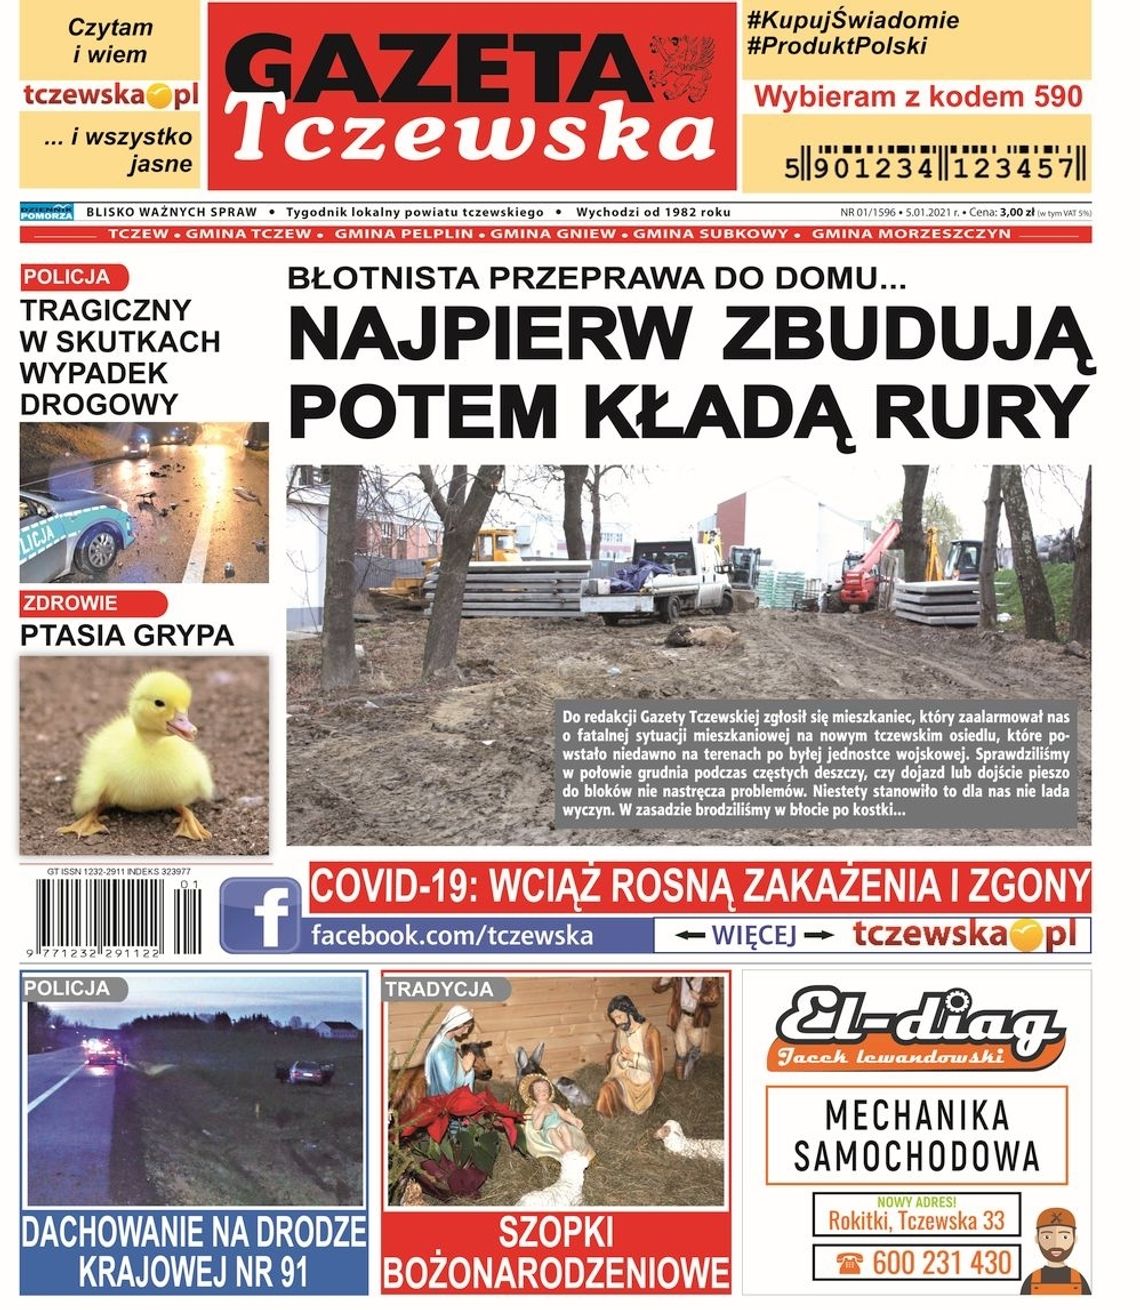 Noworoczy numer Gazety Tczewskiej już w sprzedaży! Najnowsze wiadomości z Tczewa i gmin naszego powiatu w Twoim kiosku. Co w środku?